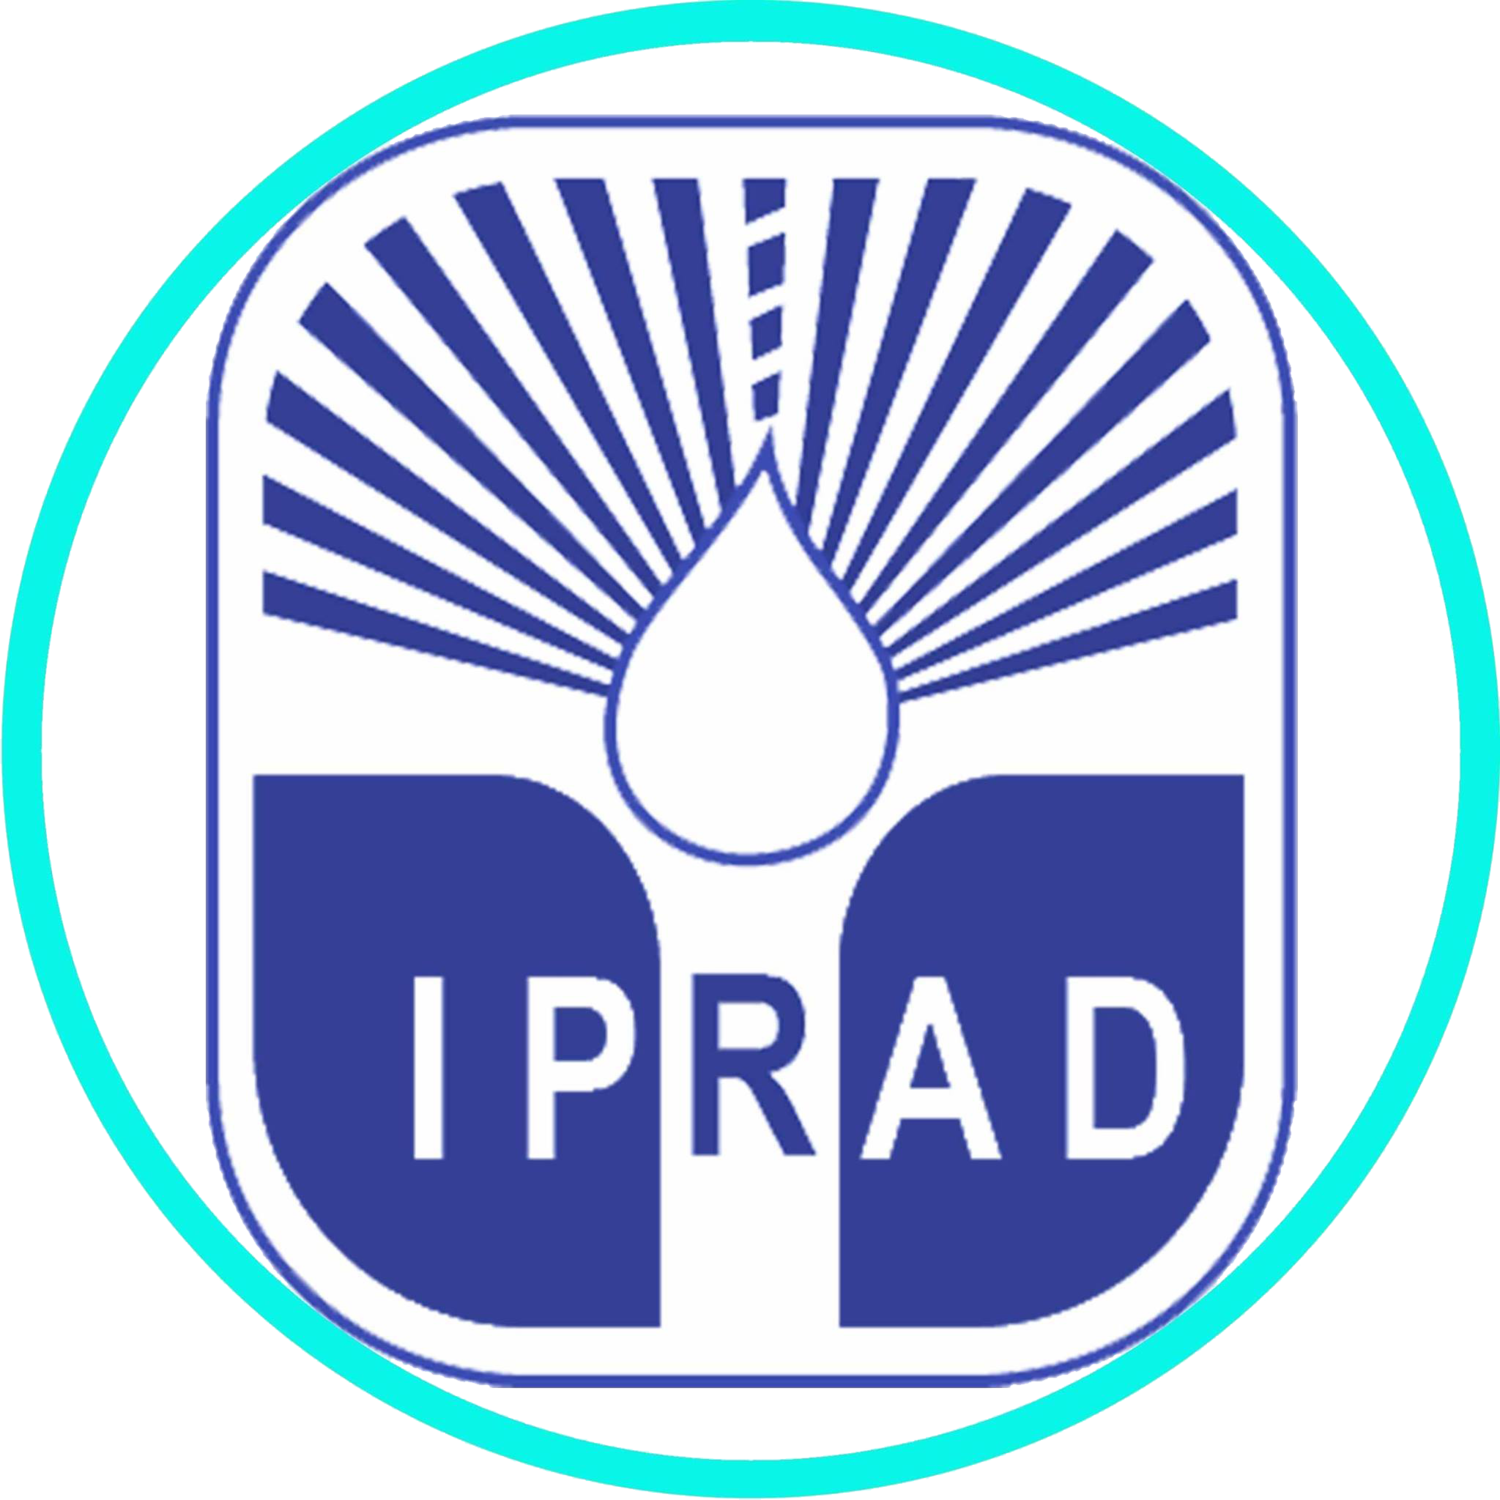 Instituto IPRAD